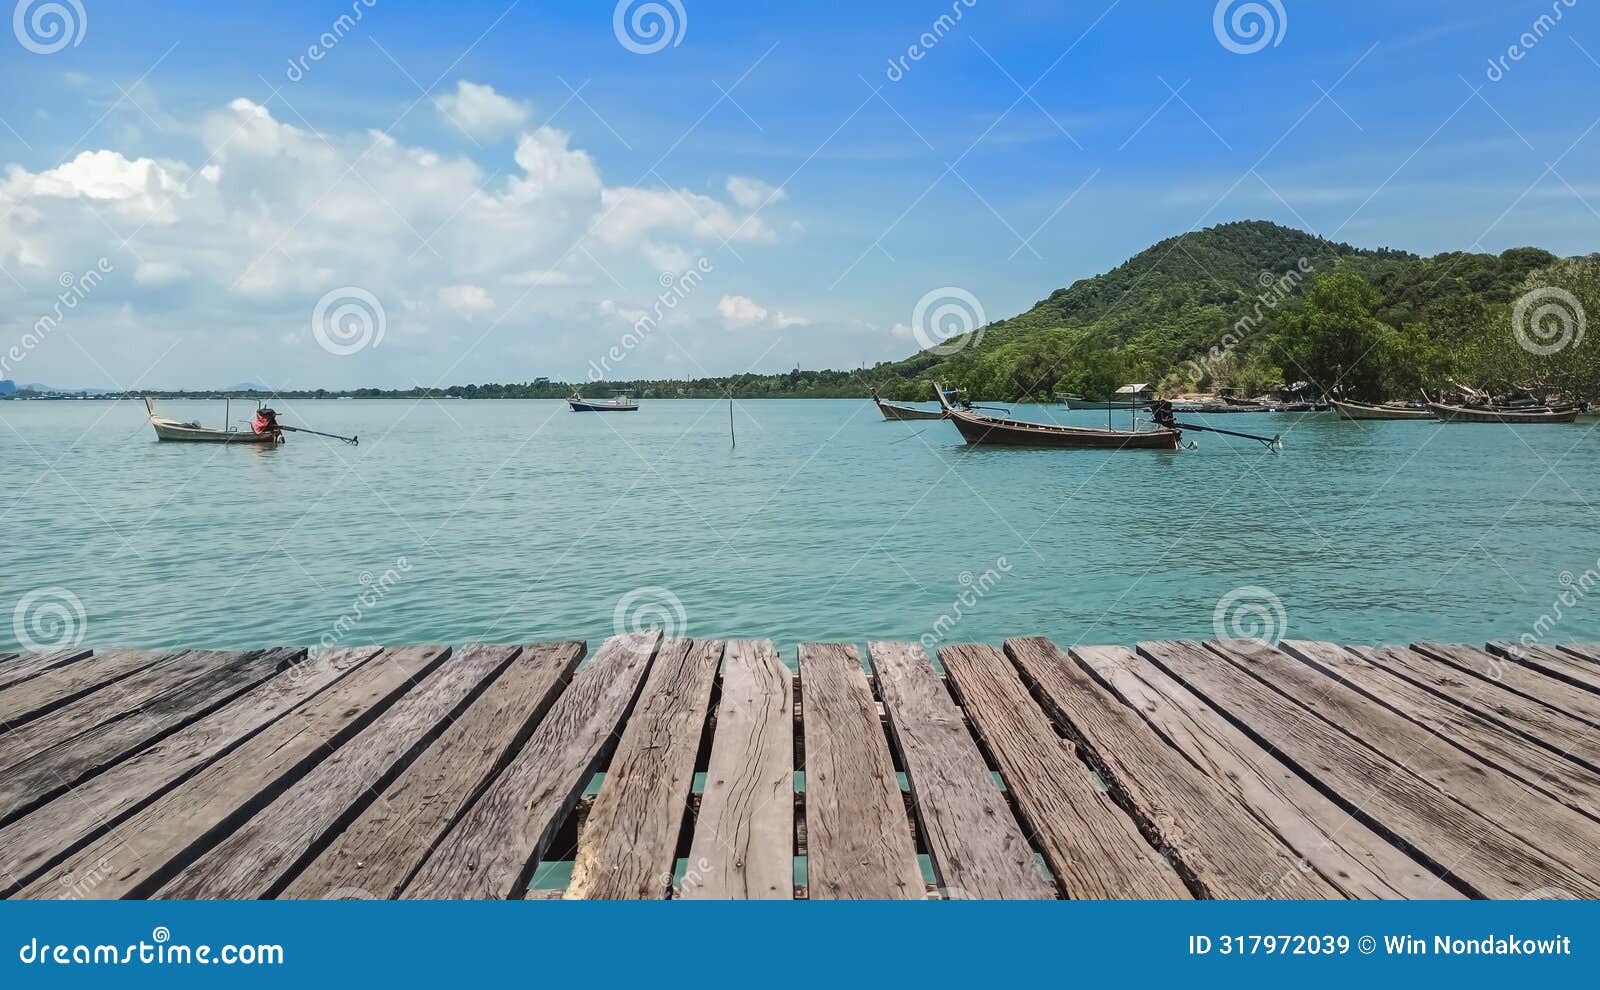 wooden boardwalk over the seaside